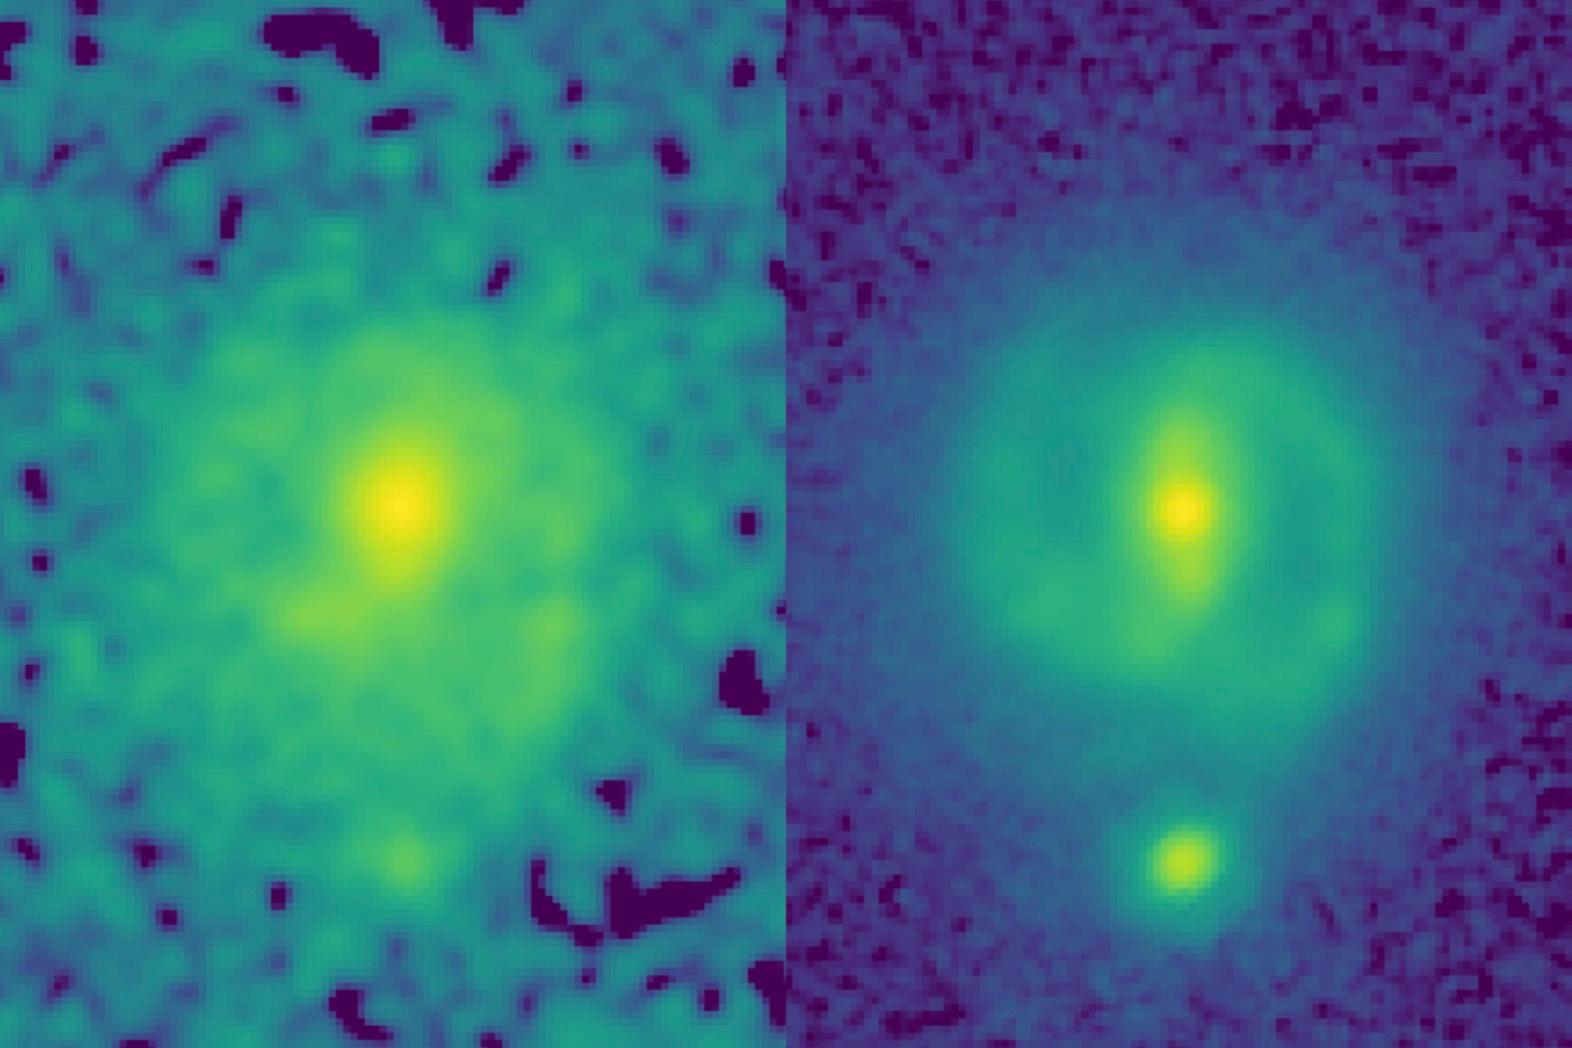 Links de foto die Hubble jaren geleden nam van een balkspiraalstelsel, rechts de James Webb-opname. Op de rechterfoto zie je duidelijk een balk in het centrum van het spiraalstelsel.